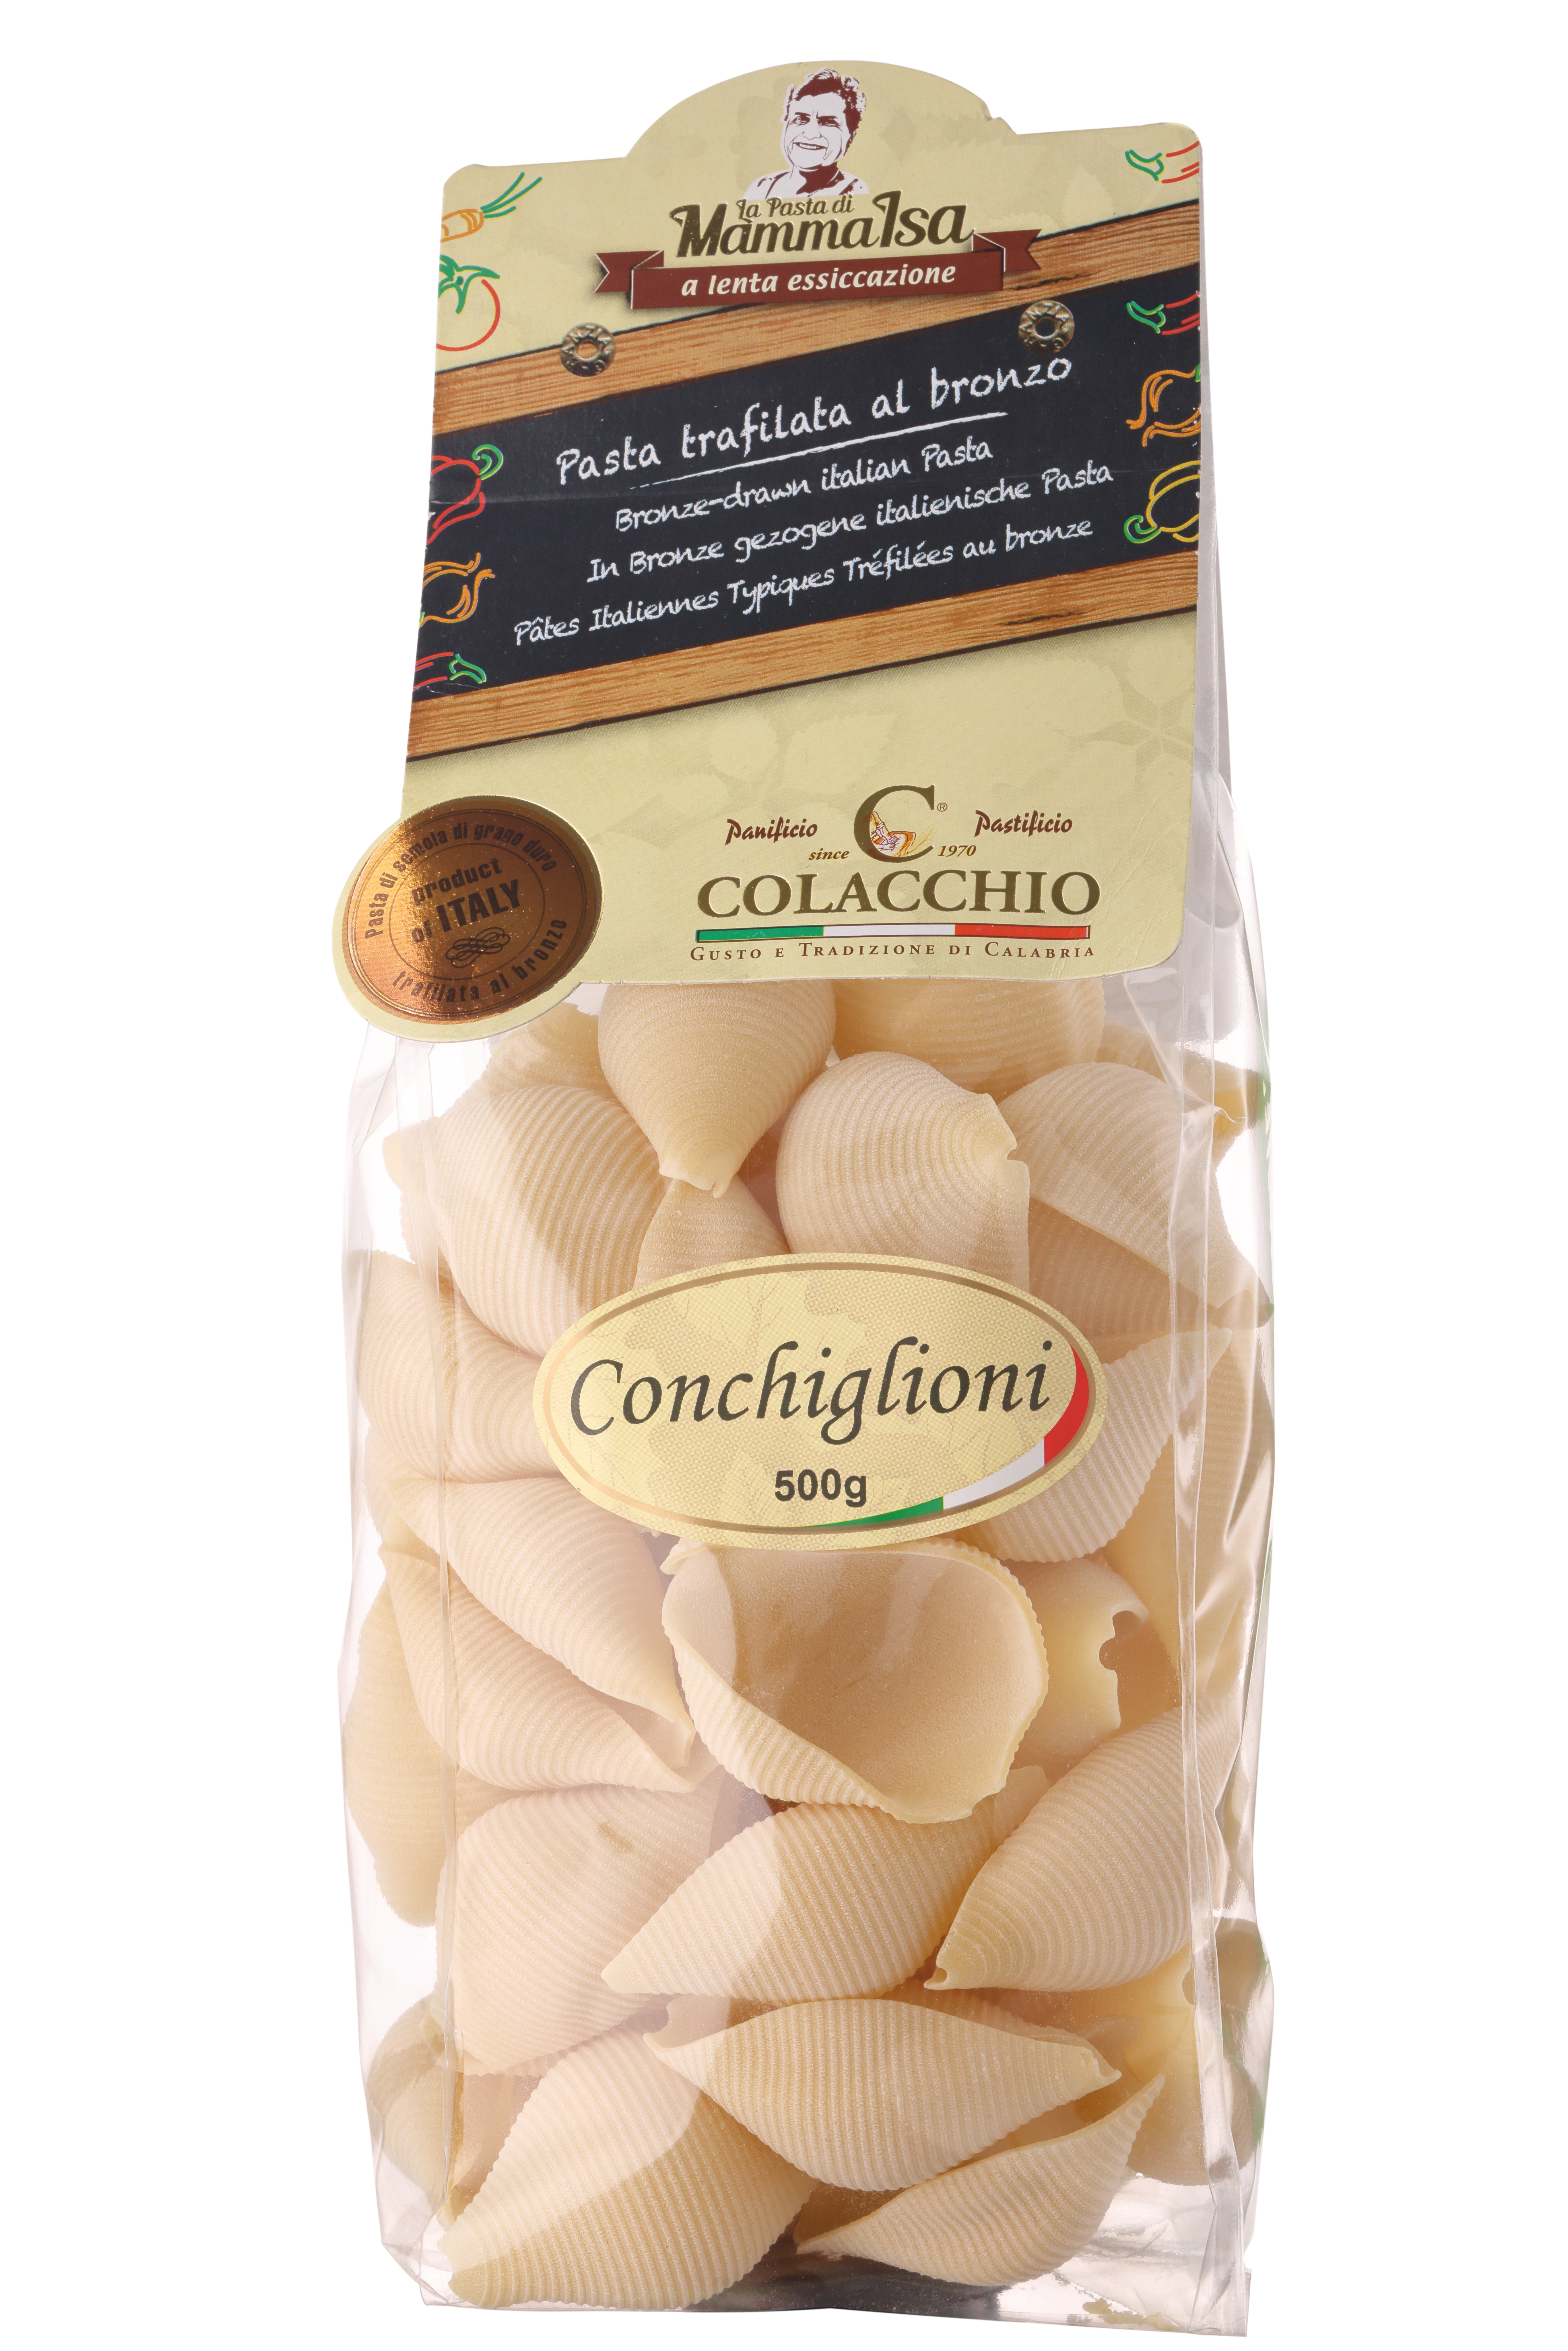 Colacchio, "Conchiglioni" Pasta, 500g